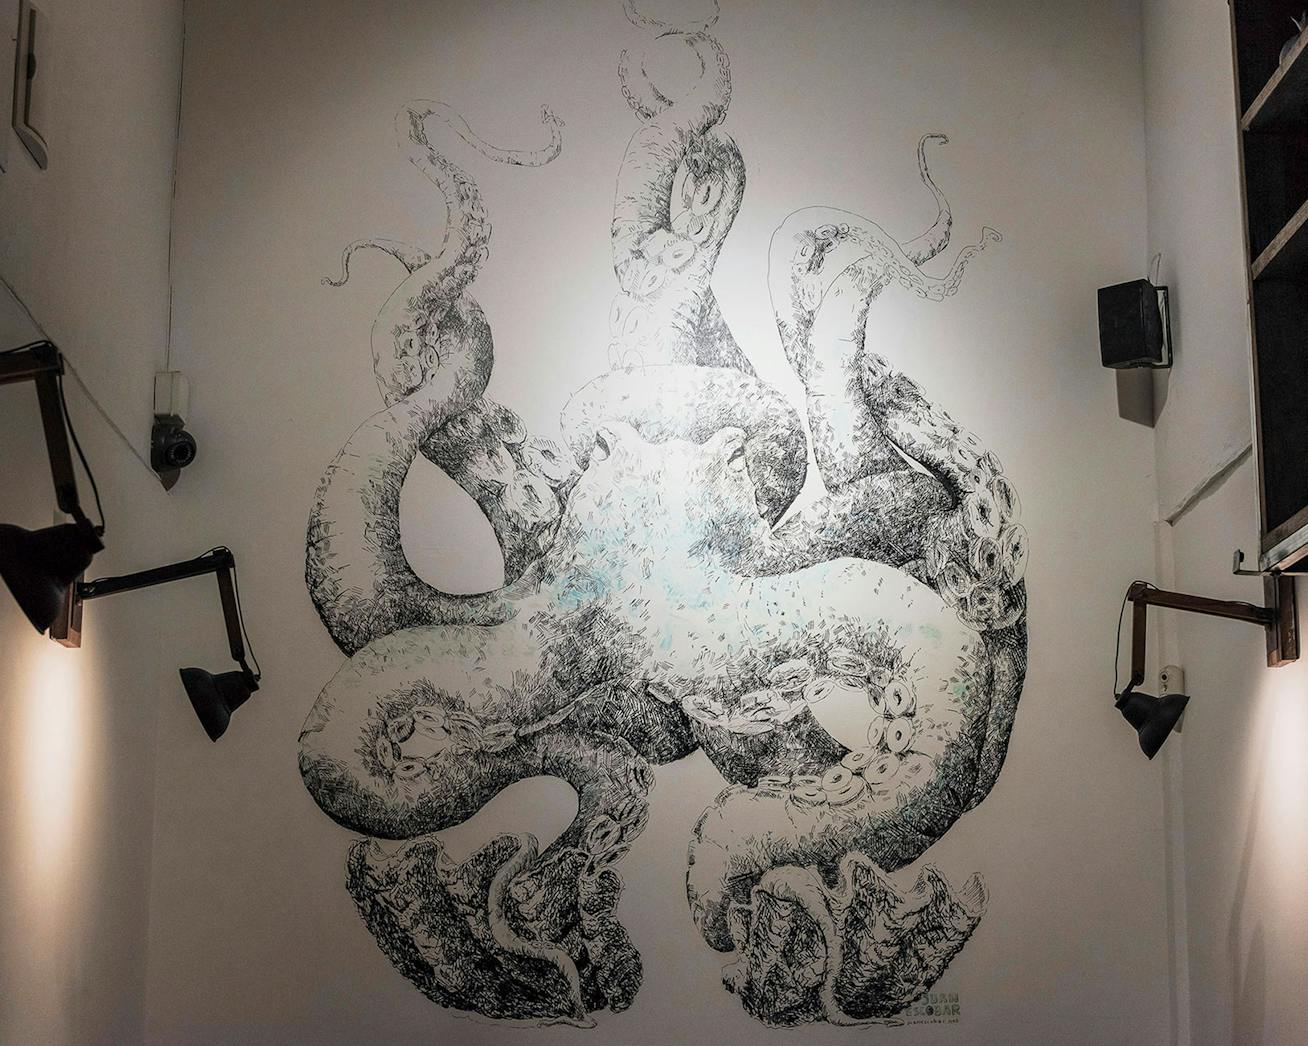 Modern wall mural of an octopus in a bar